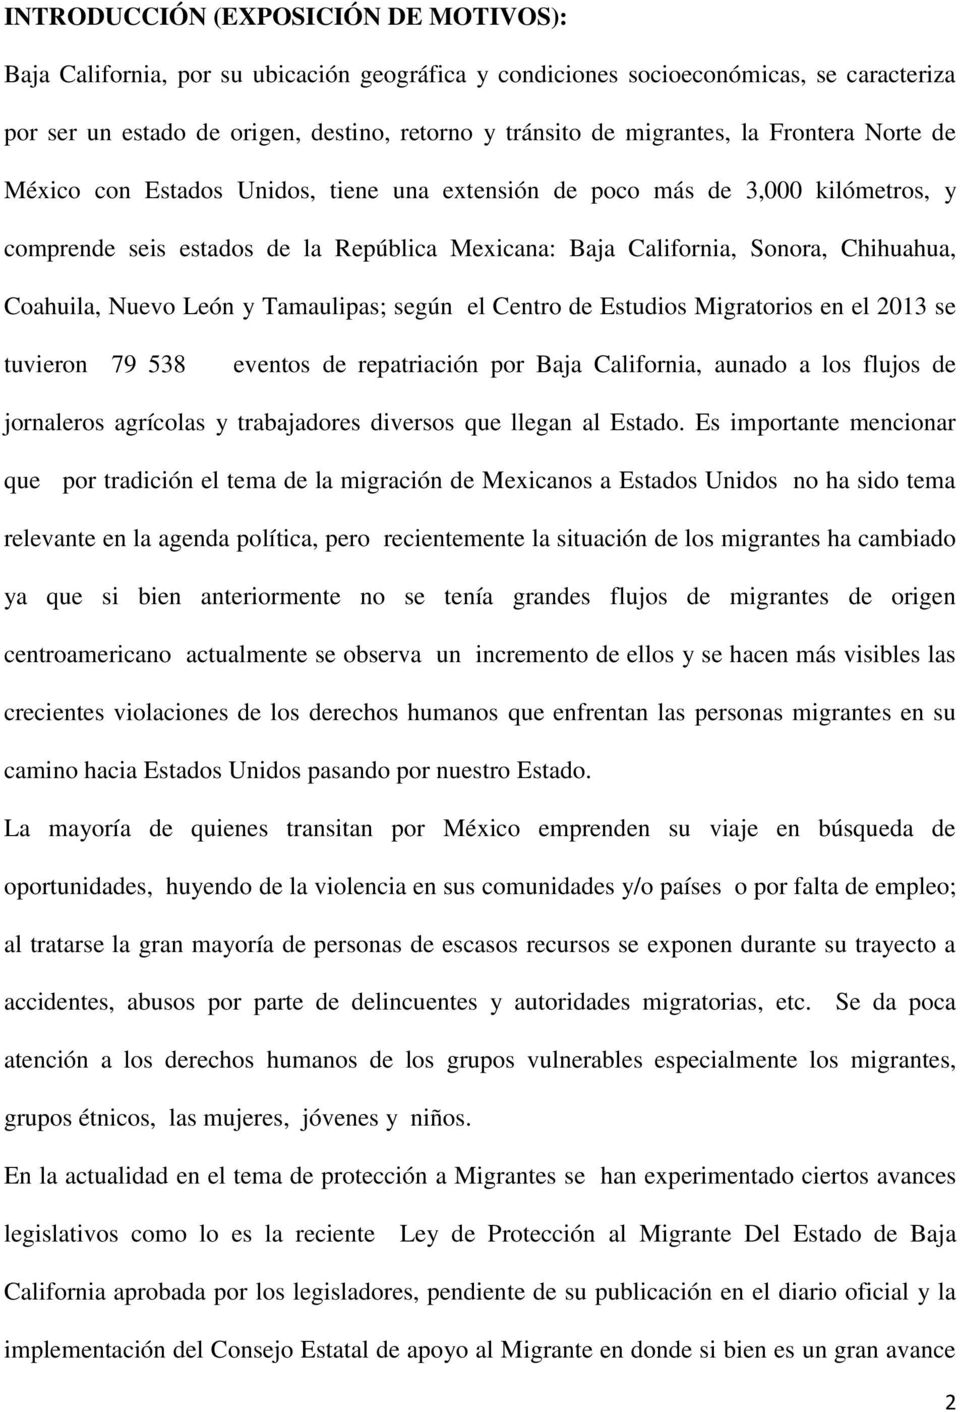 Nuevo León y Tamaulipas; según el Centro de Estudios Migratorios en el 2013 se tuvieron 79 538 eventos de repatriación por Baja California, aunado a los flujos de jornaleros agrícolas y trabajadores